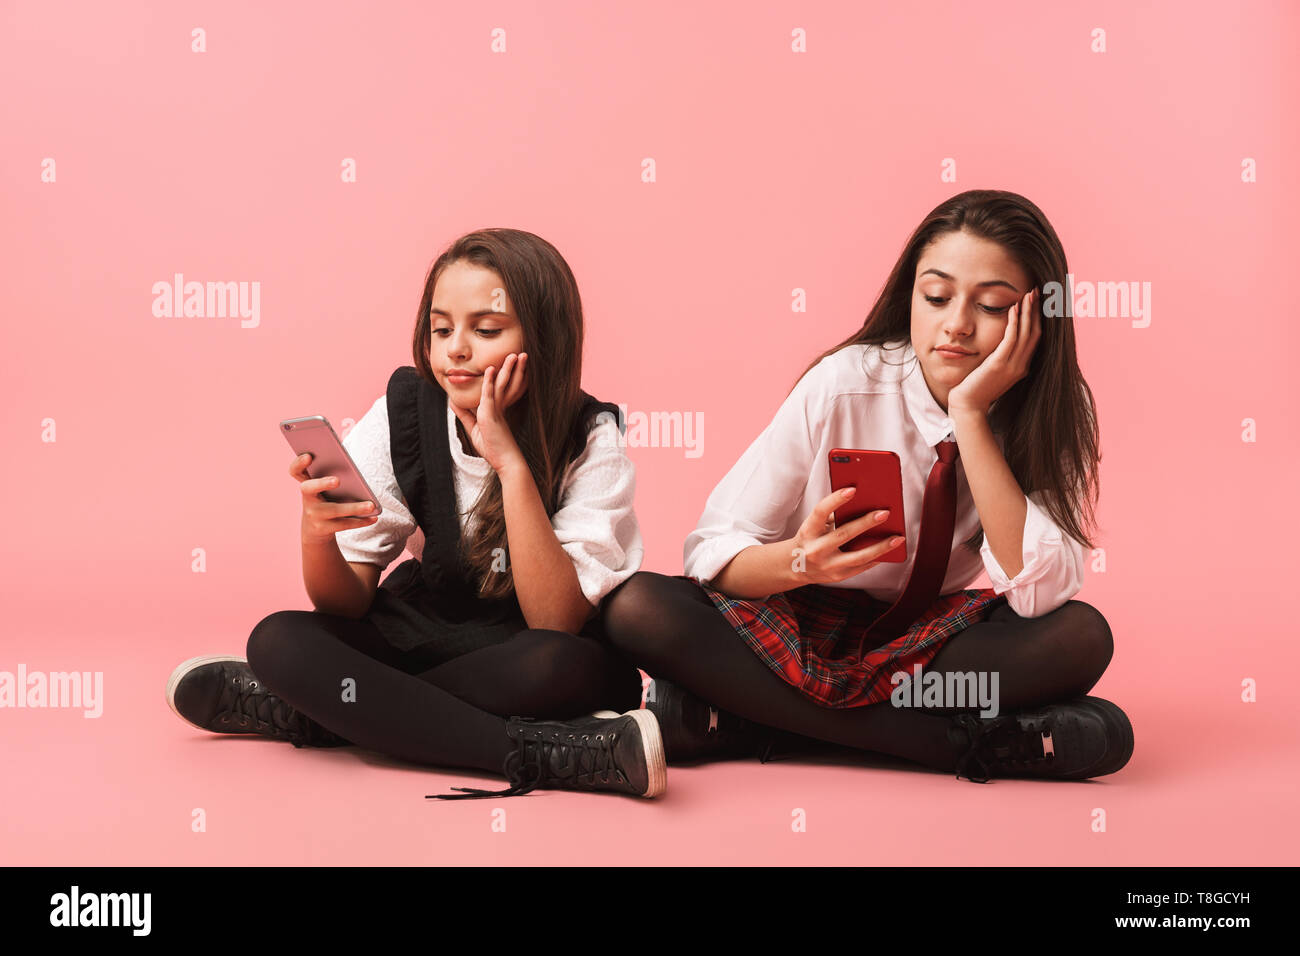 Ritratto di belle ragazze in uniforme scolastica utilizzando i telefoni cellulari mentre è seduto sul pavimento isolato su sfondo rosso Foto Stock